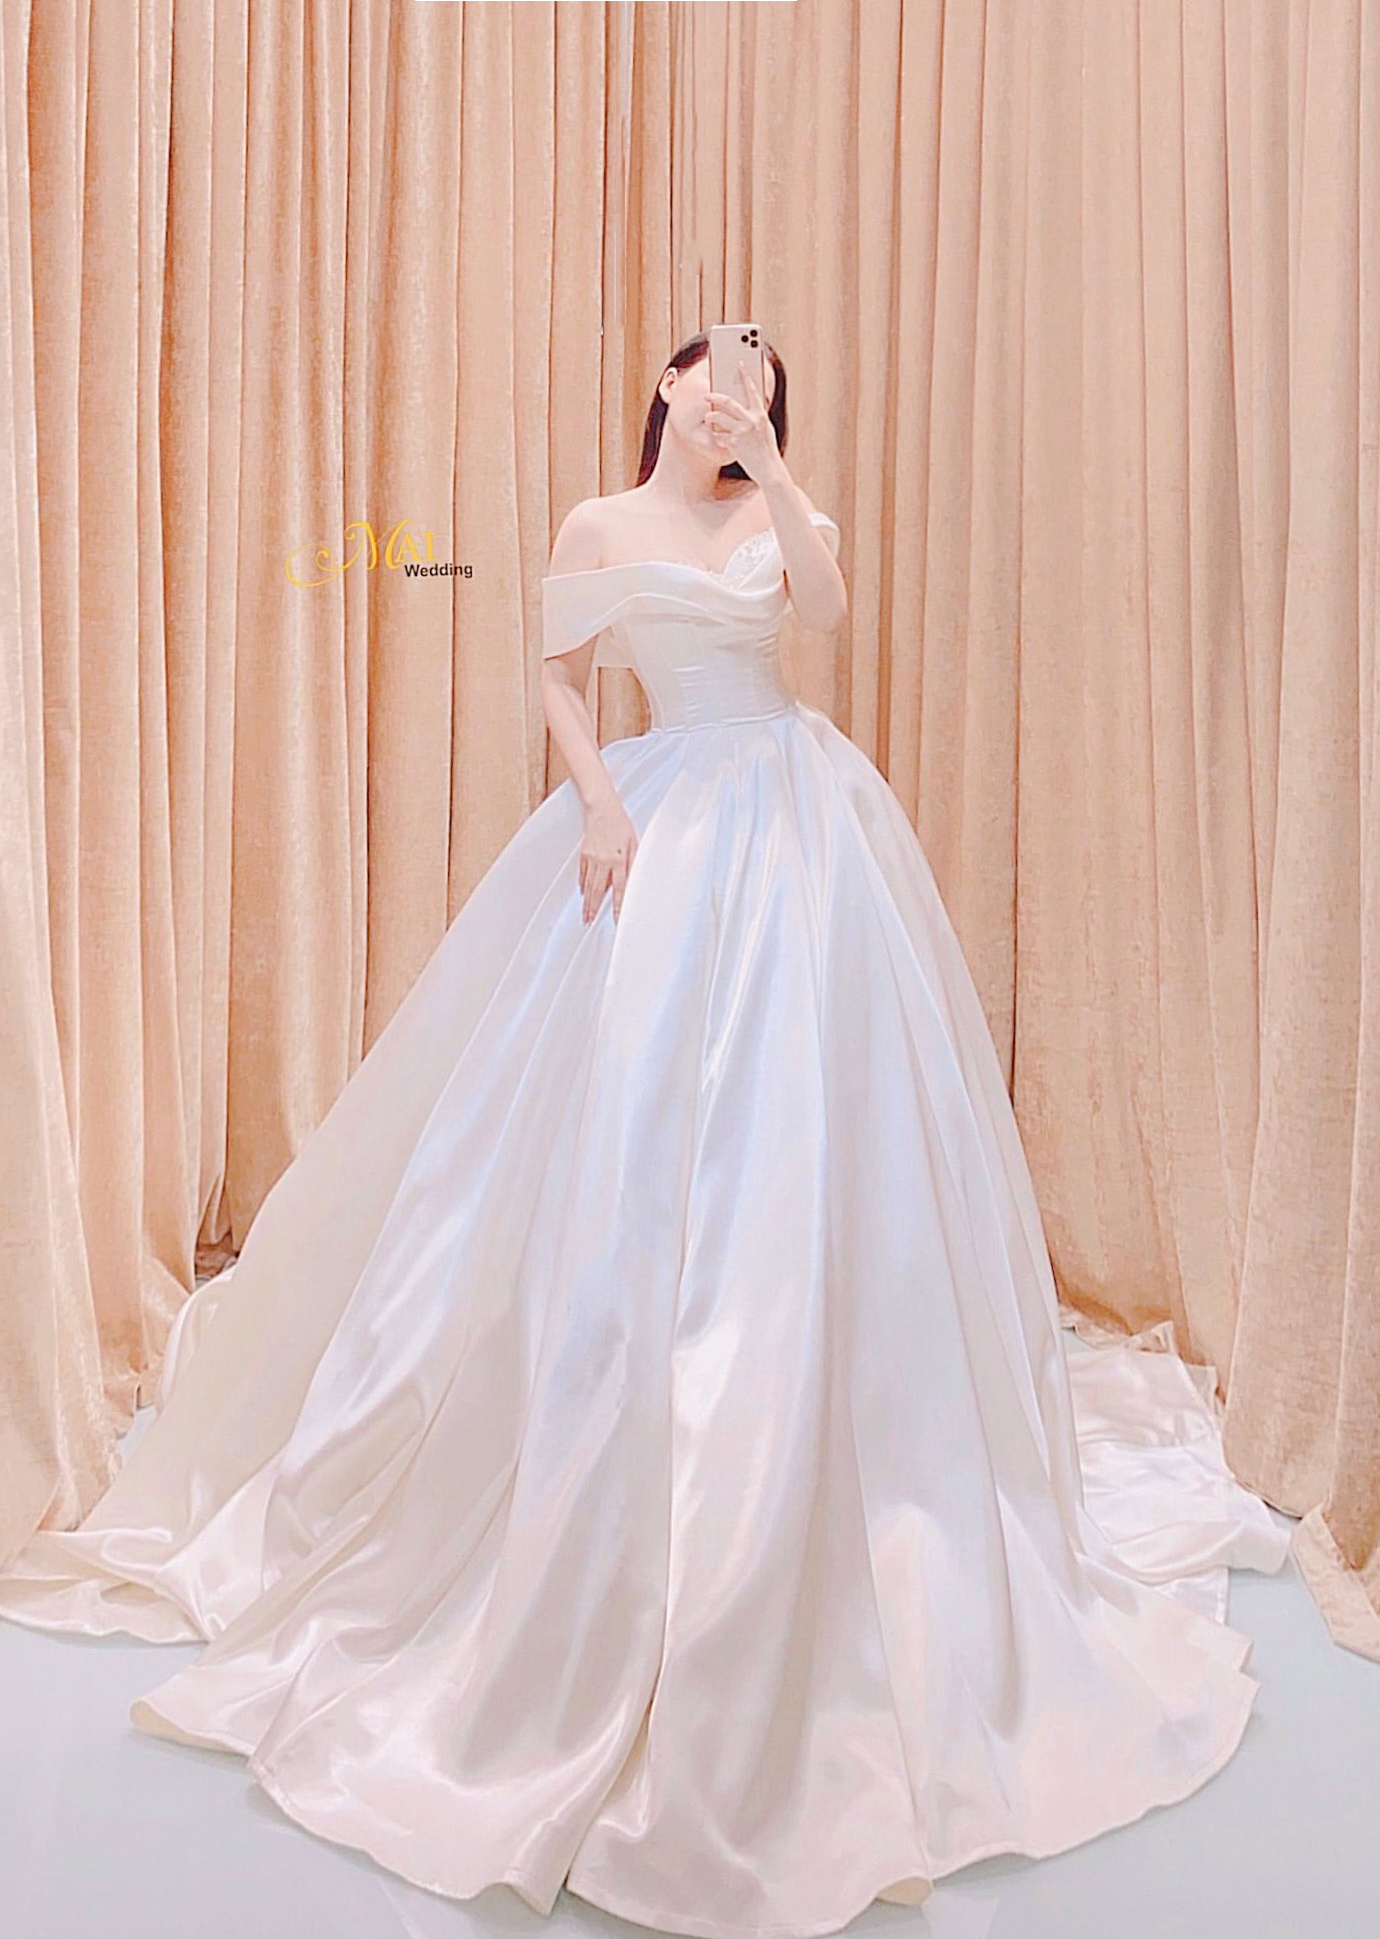 100 mẫu áo cưới đẹp 2020  Kinh nghiệm chọn áo cưới đẹp theo vóc dáng